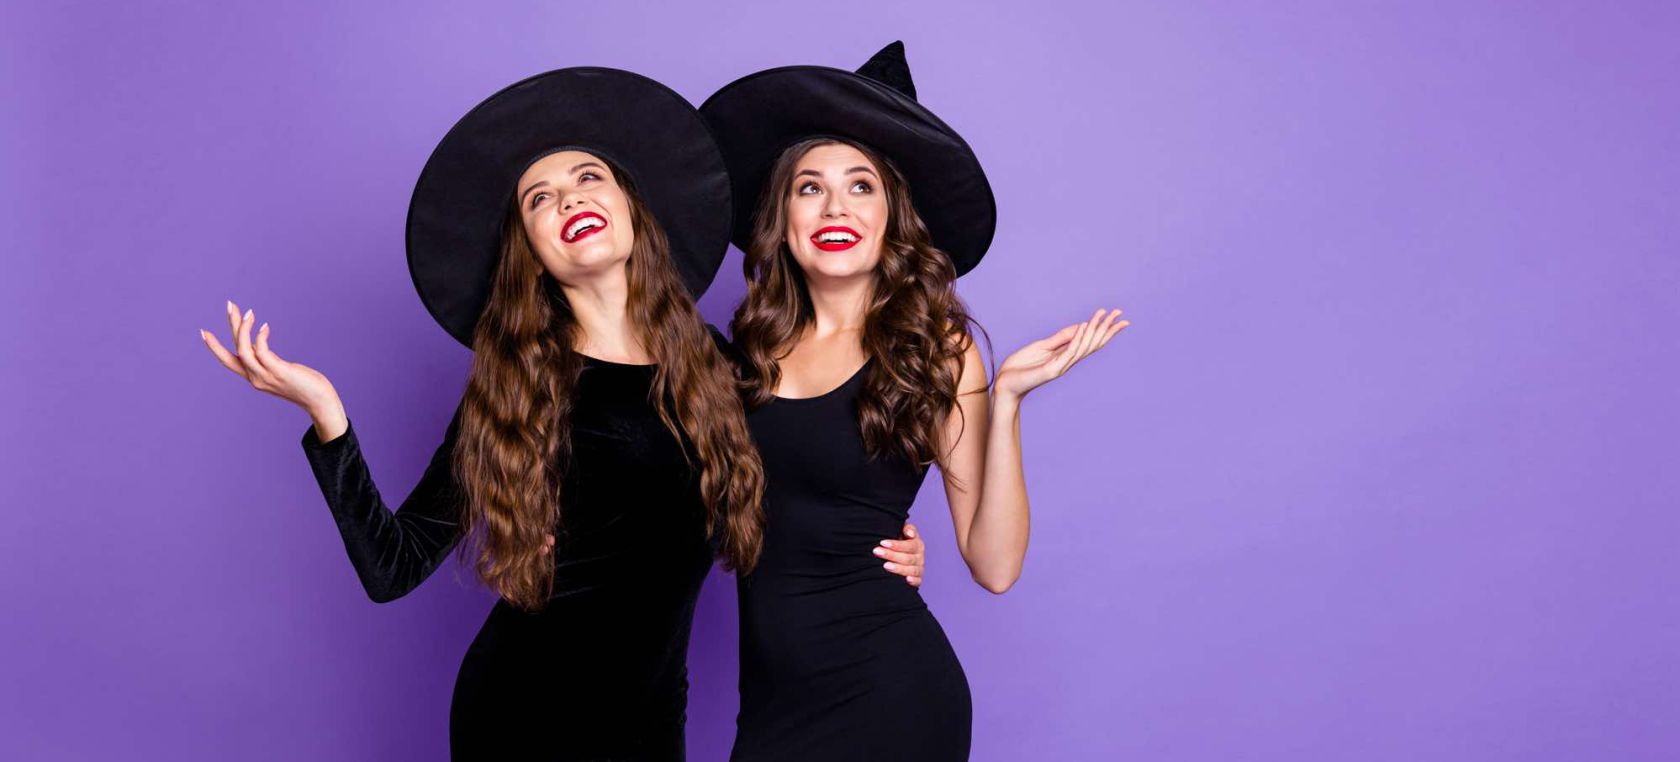 Belicoso Discutir popurrí Zara tiene los disfraces de Halloween más originales e inesperados | Moda y  Belleza | LOS40